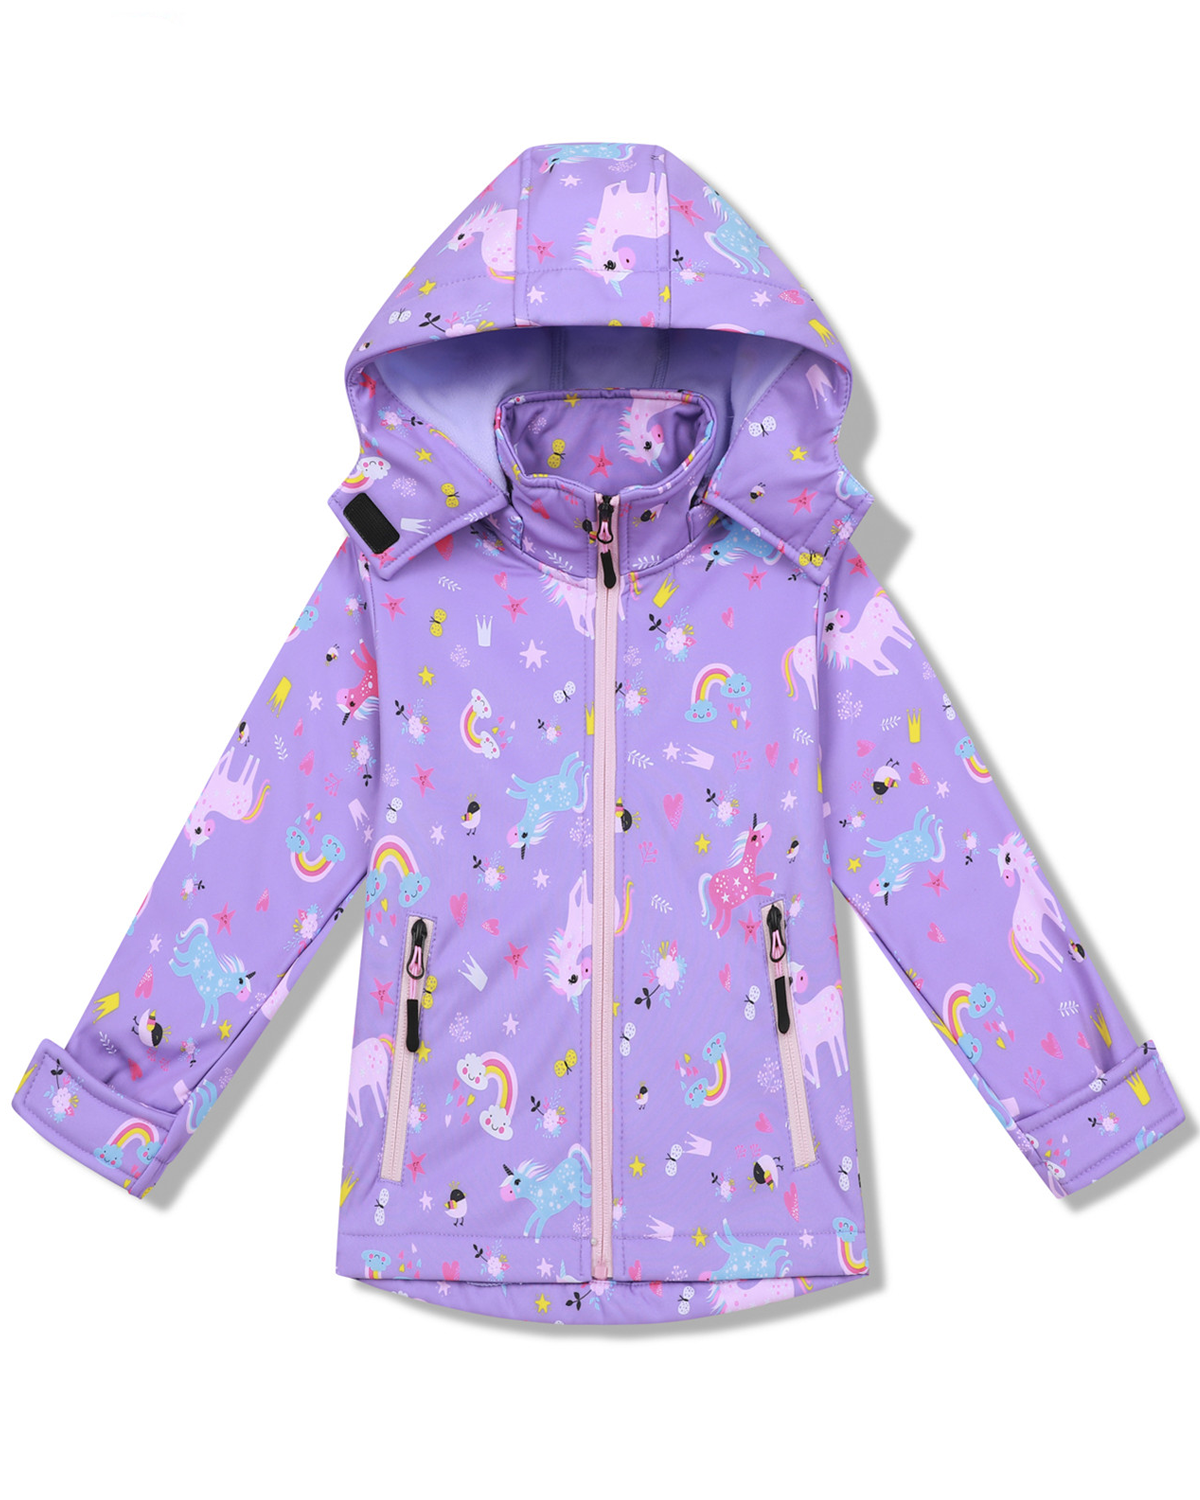 Dívčí softshellová bunda, zateplená - KUGO HB8630, fialková Barva: Fialková, Velikost: 128